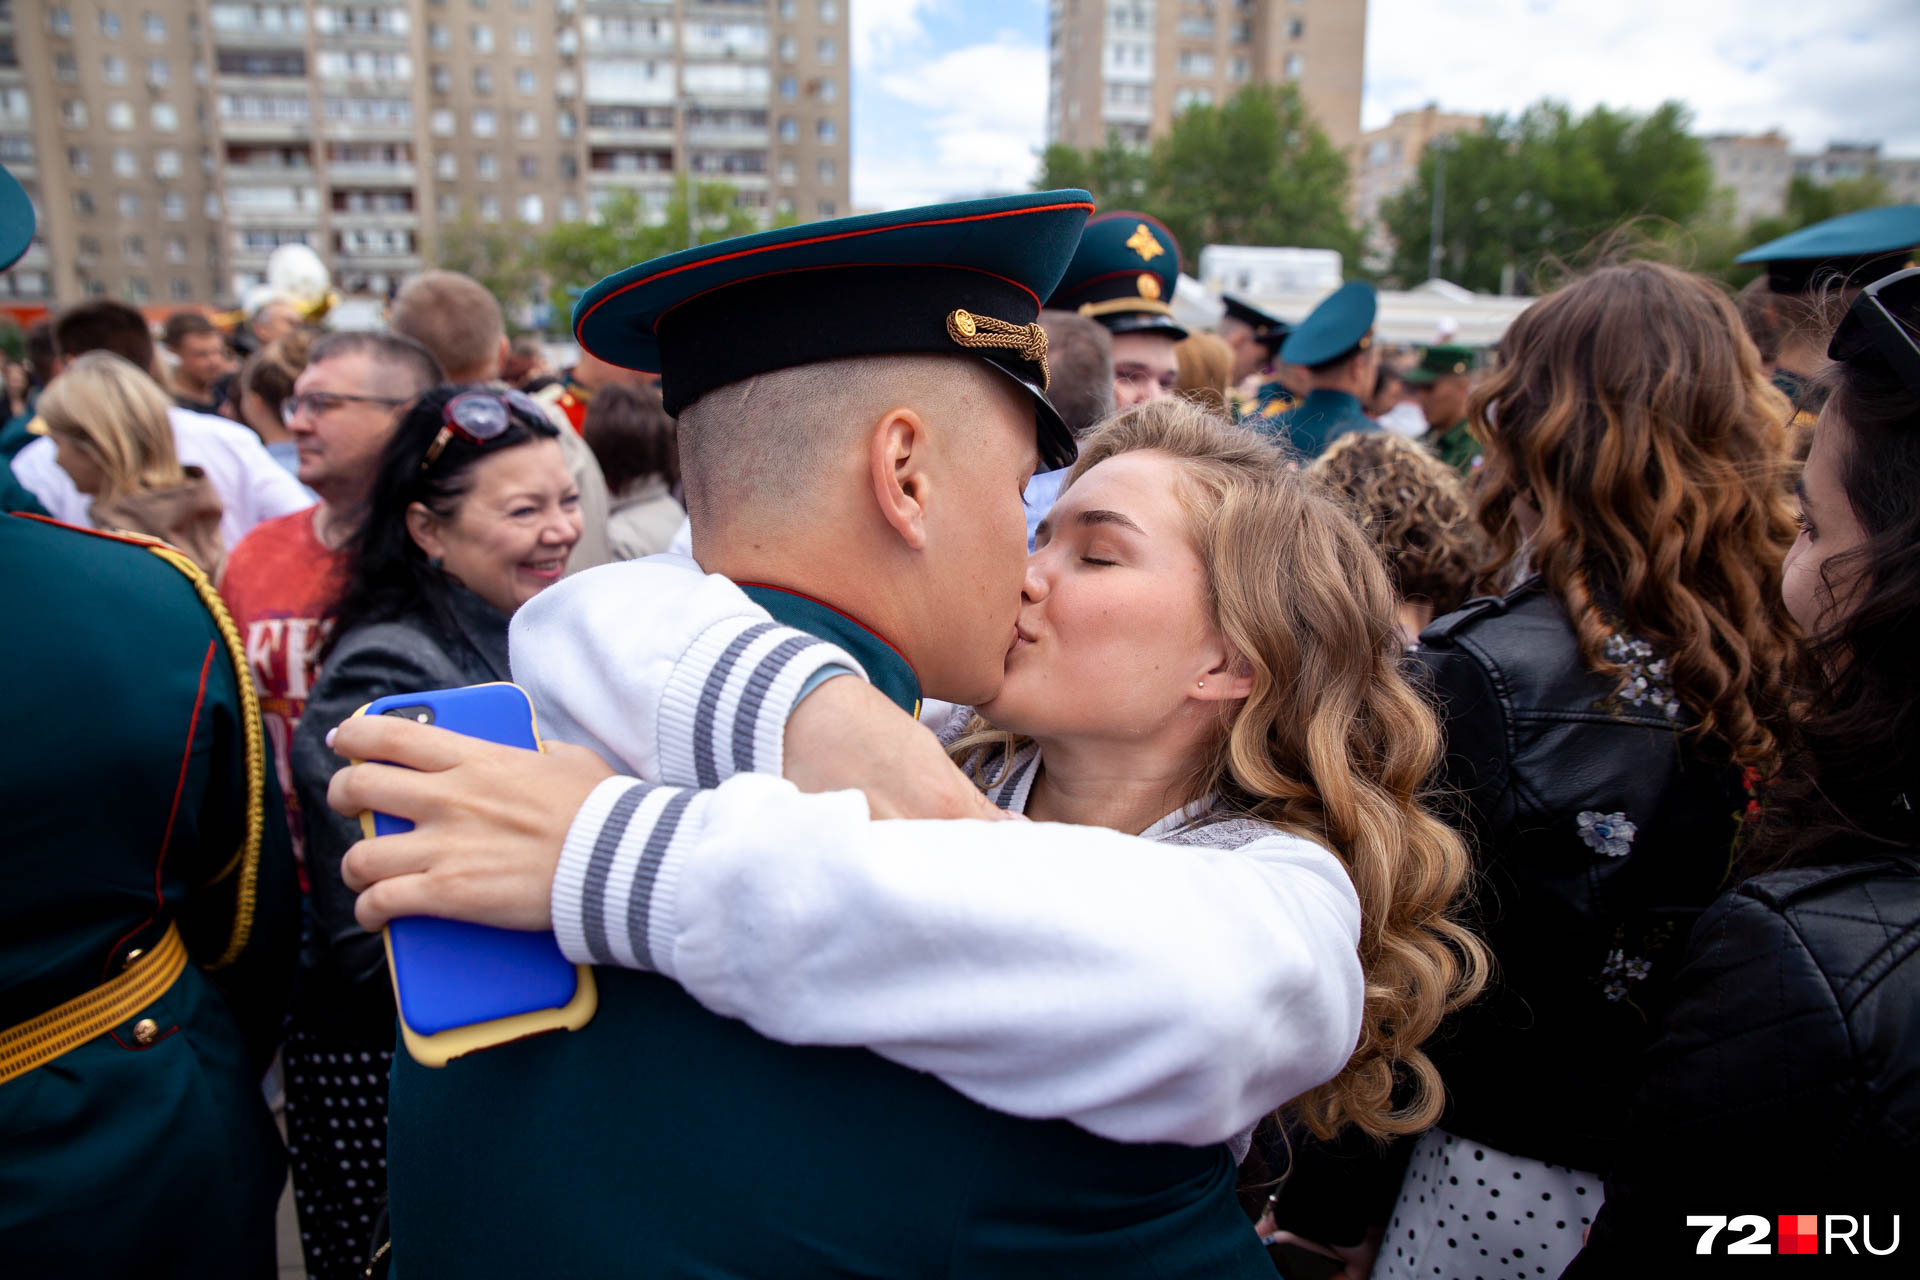 Какой страстный поцелуй молодого офицера и его любимой! Тут комментарии излишни. Любите друг друга так же сильно, как эта пара